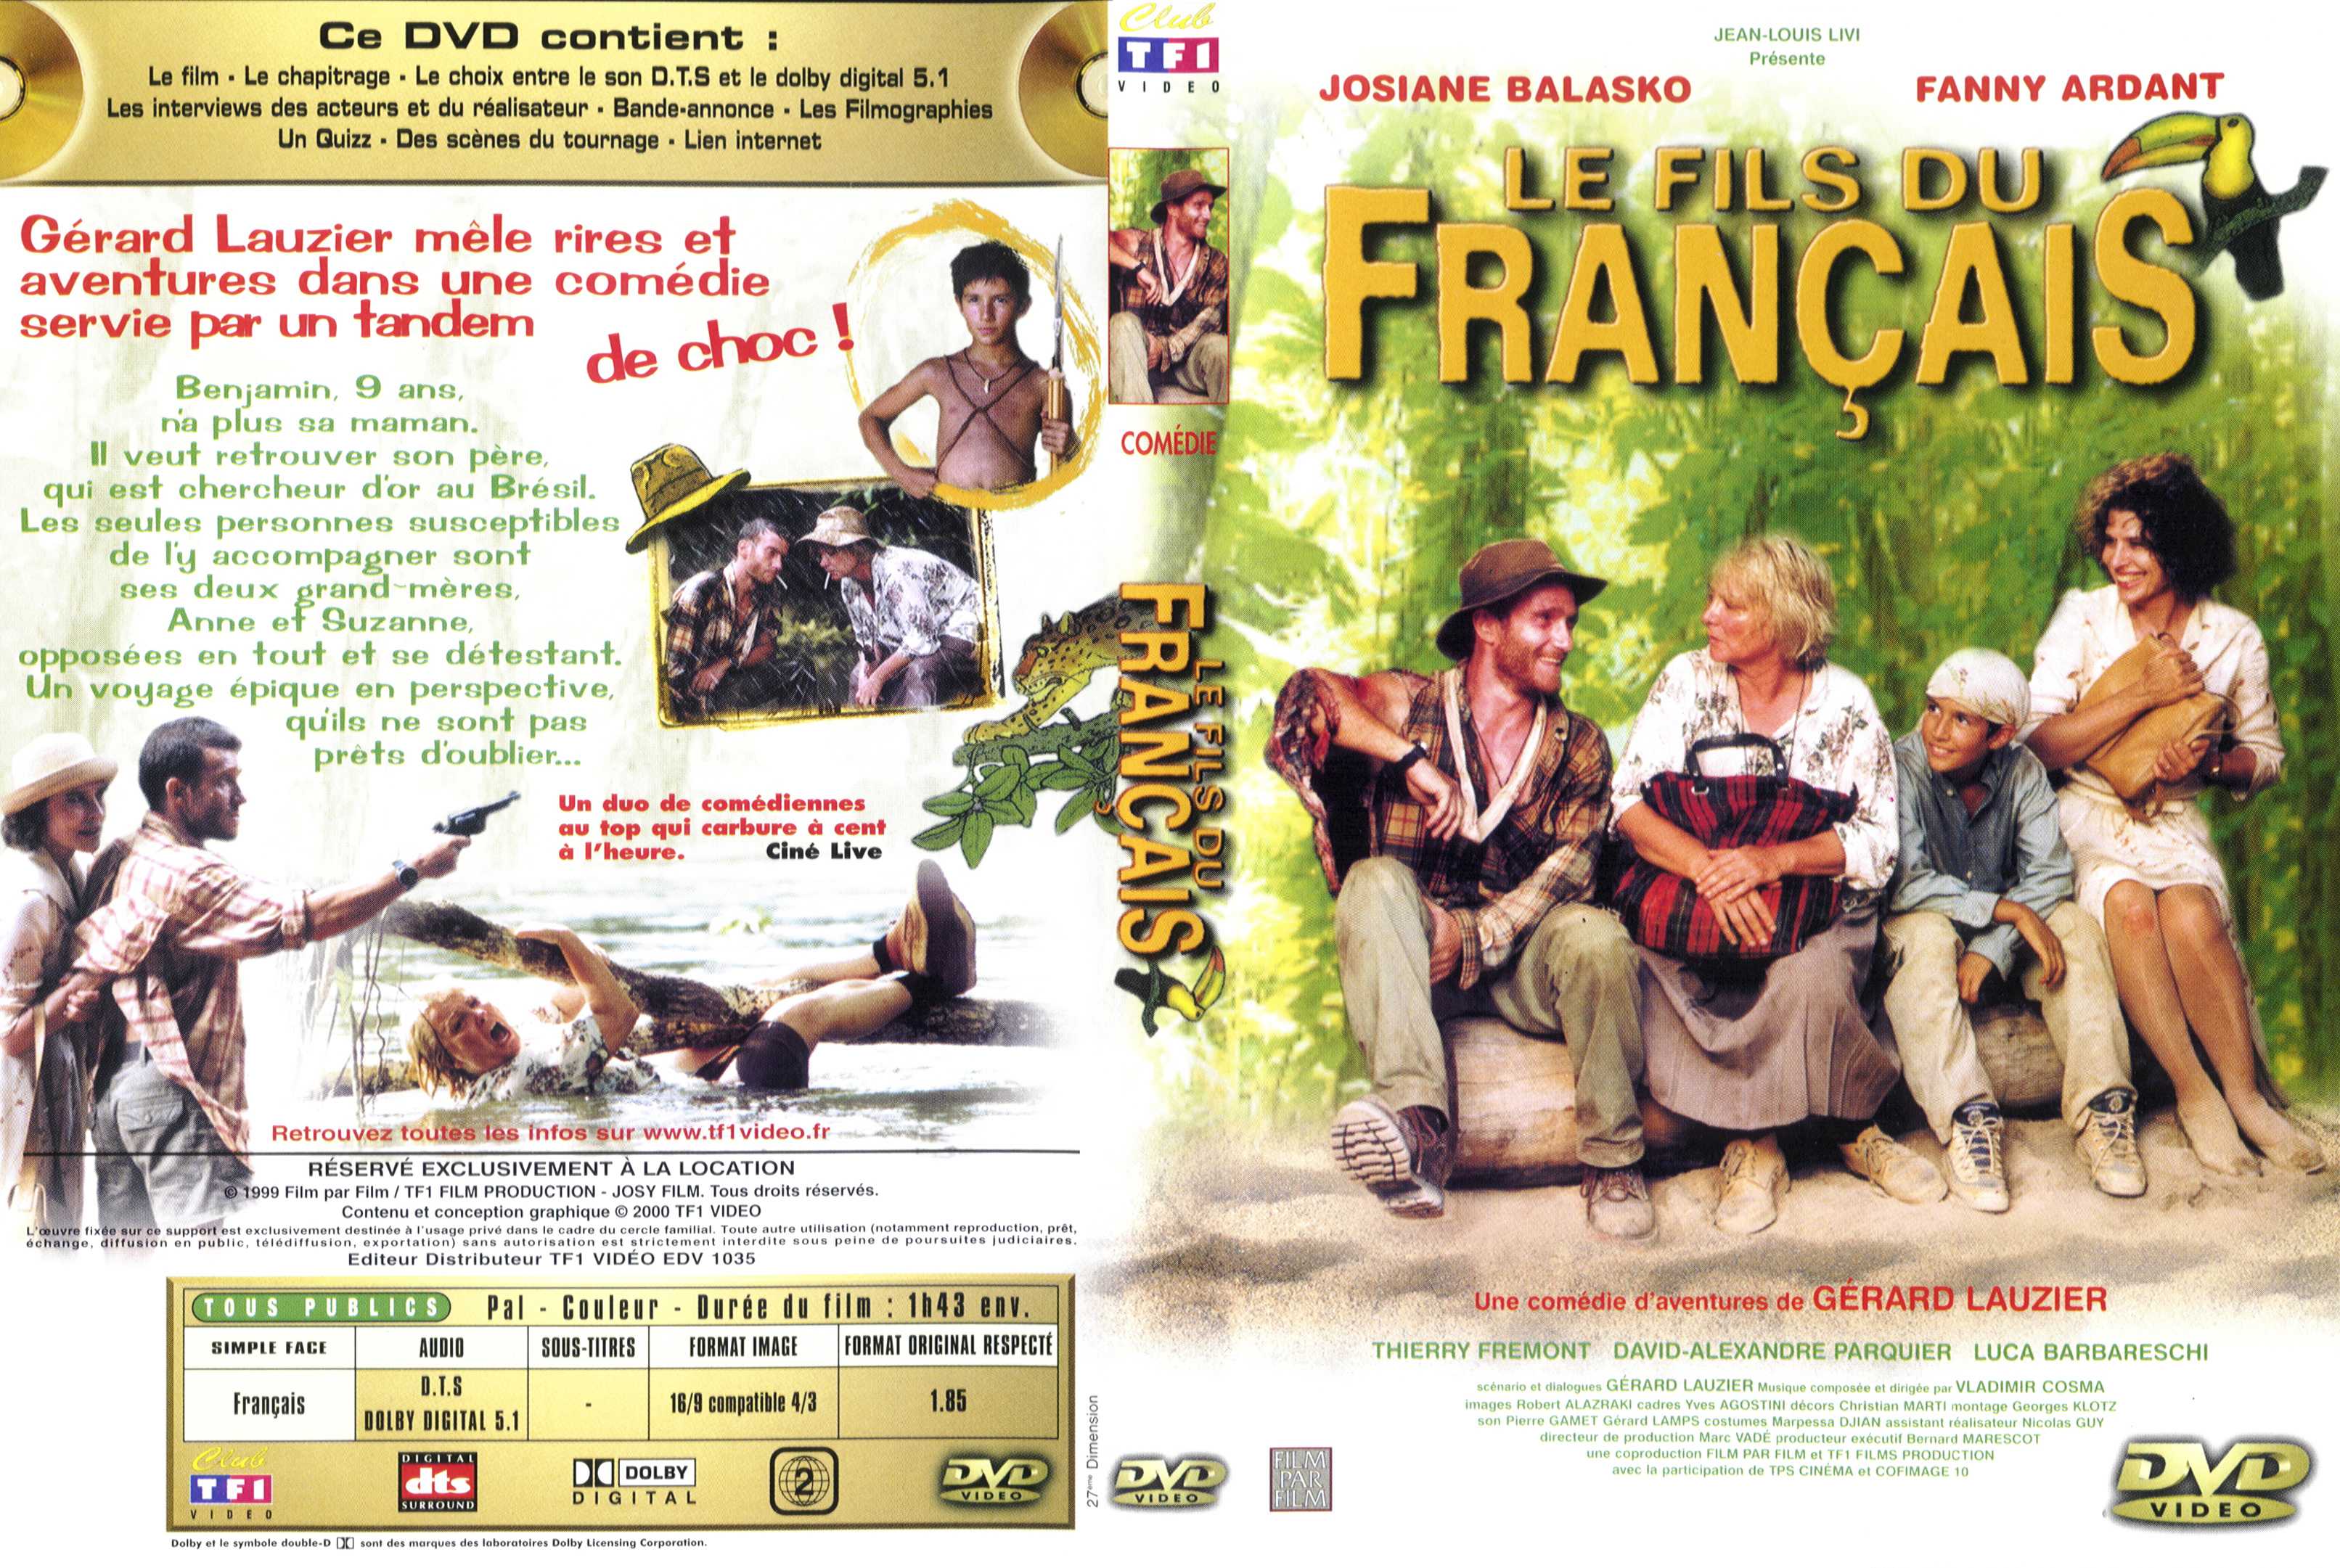 Jaquette DVD Le fils du francais